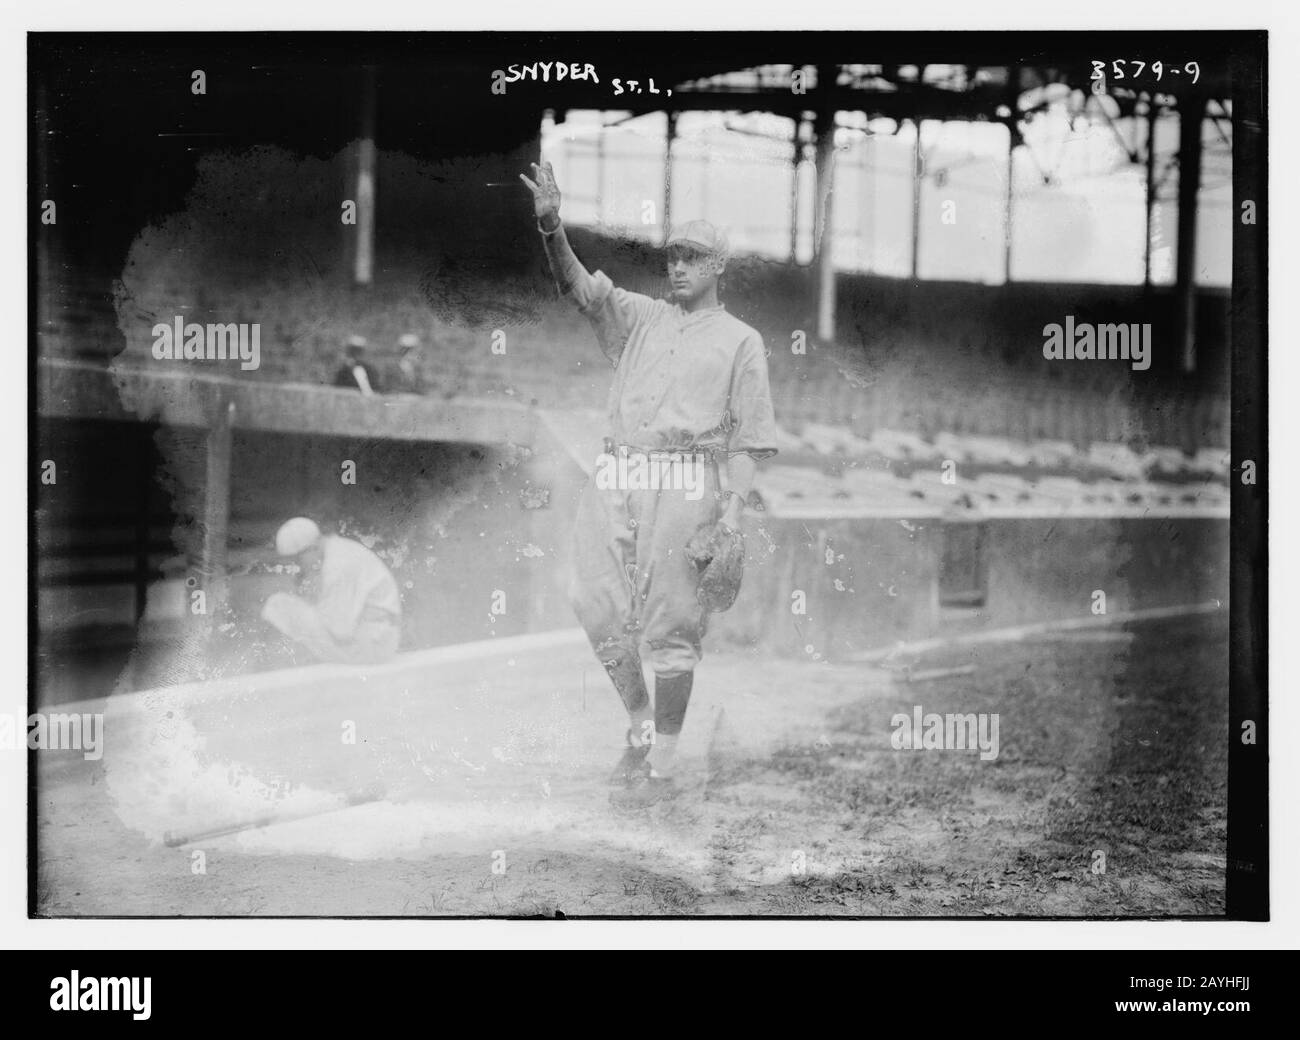 Frank Snyder, St. Louis NL (baseball) Stock Photo